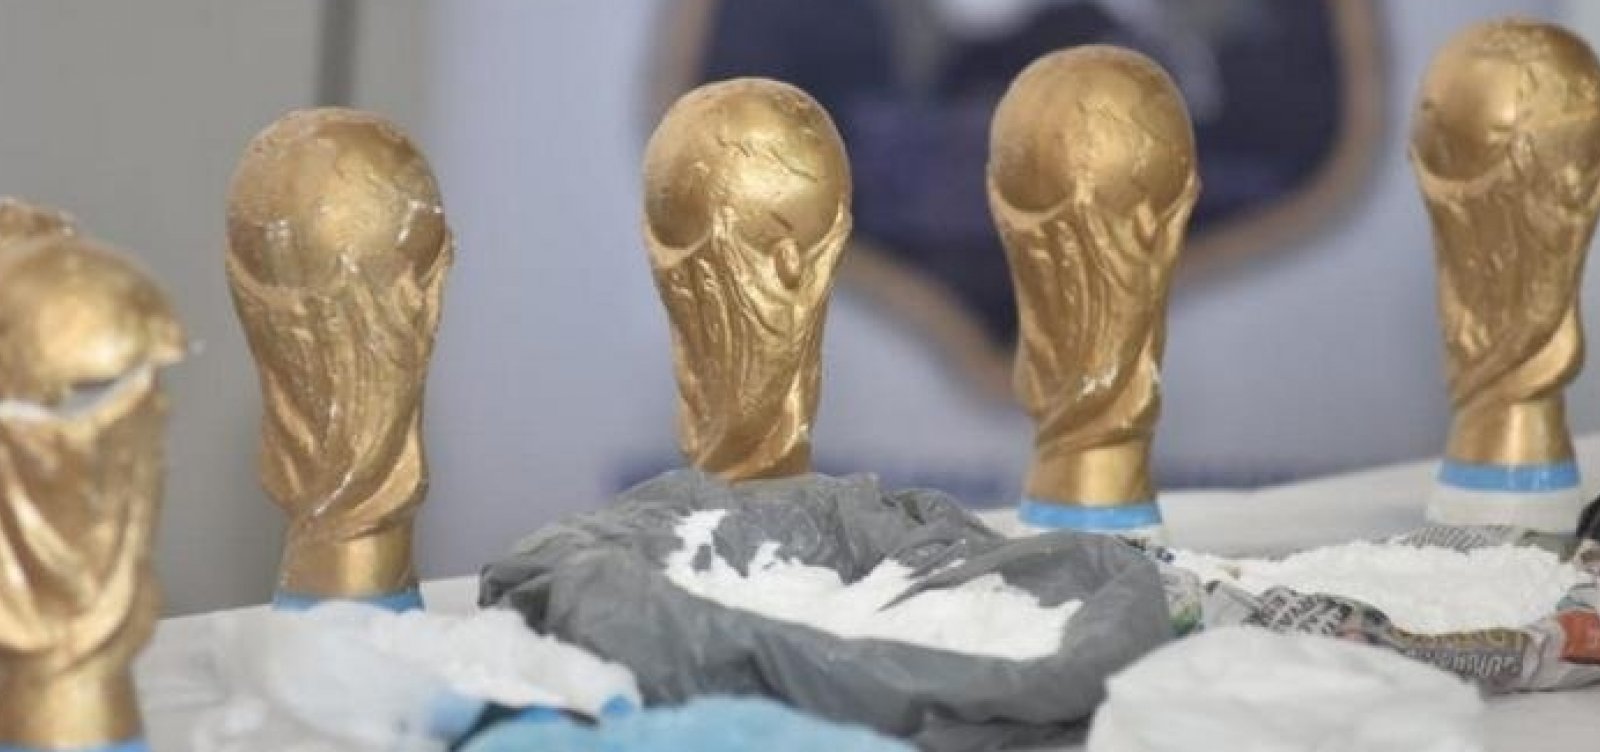 Troféus falsos da Copa do Mundo eram usados para transportar drogas na Argentina